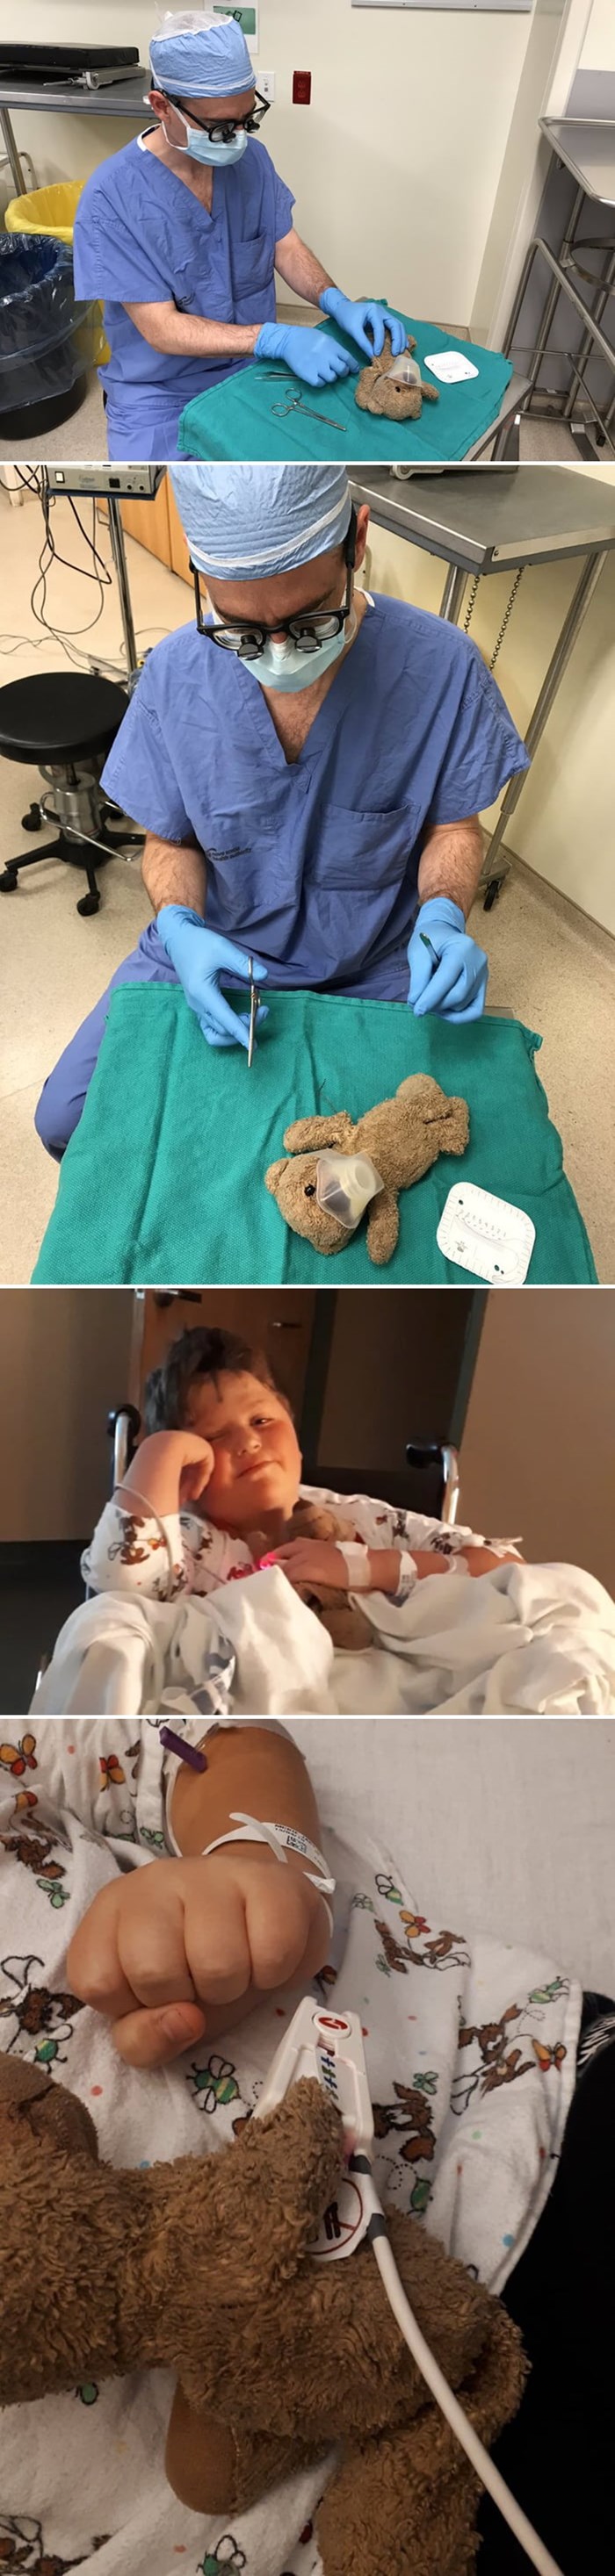 Kirurg je operirao plišanog medvjedića kako bi utješio dječaka prije ozbiljnog zahvata